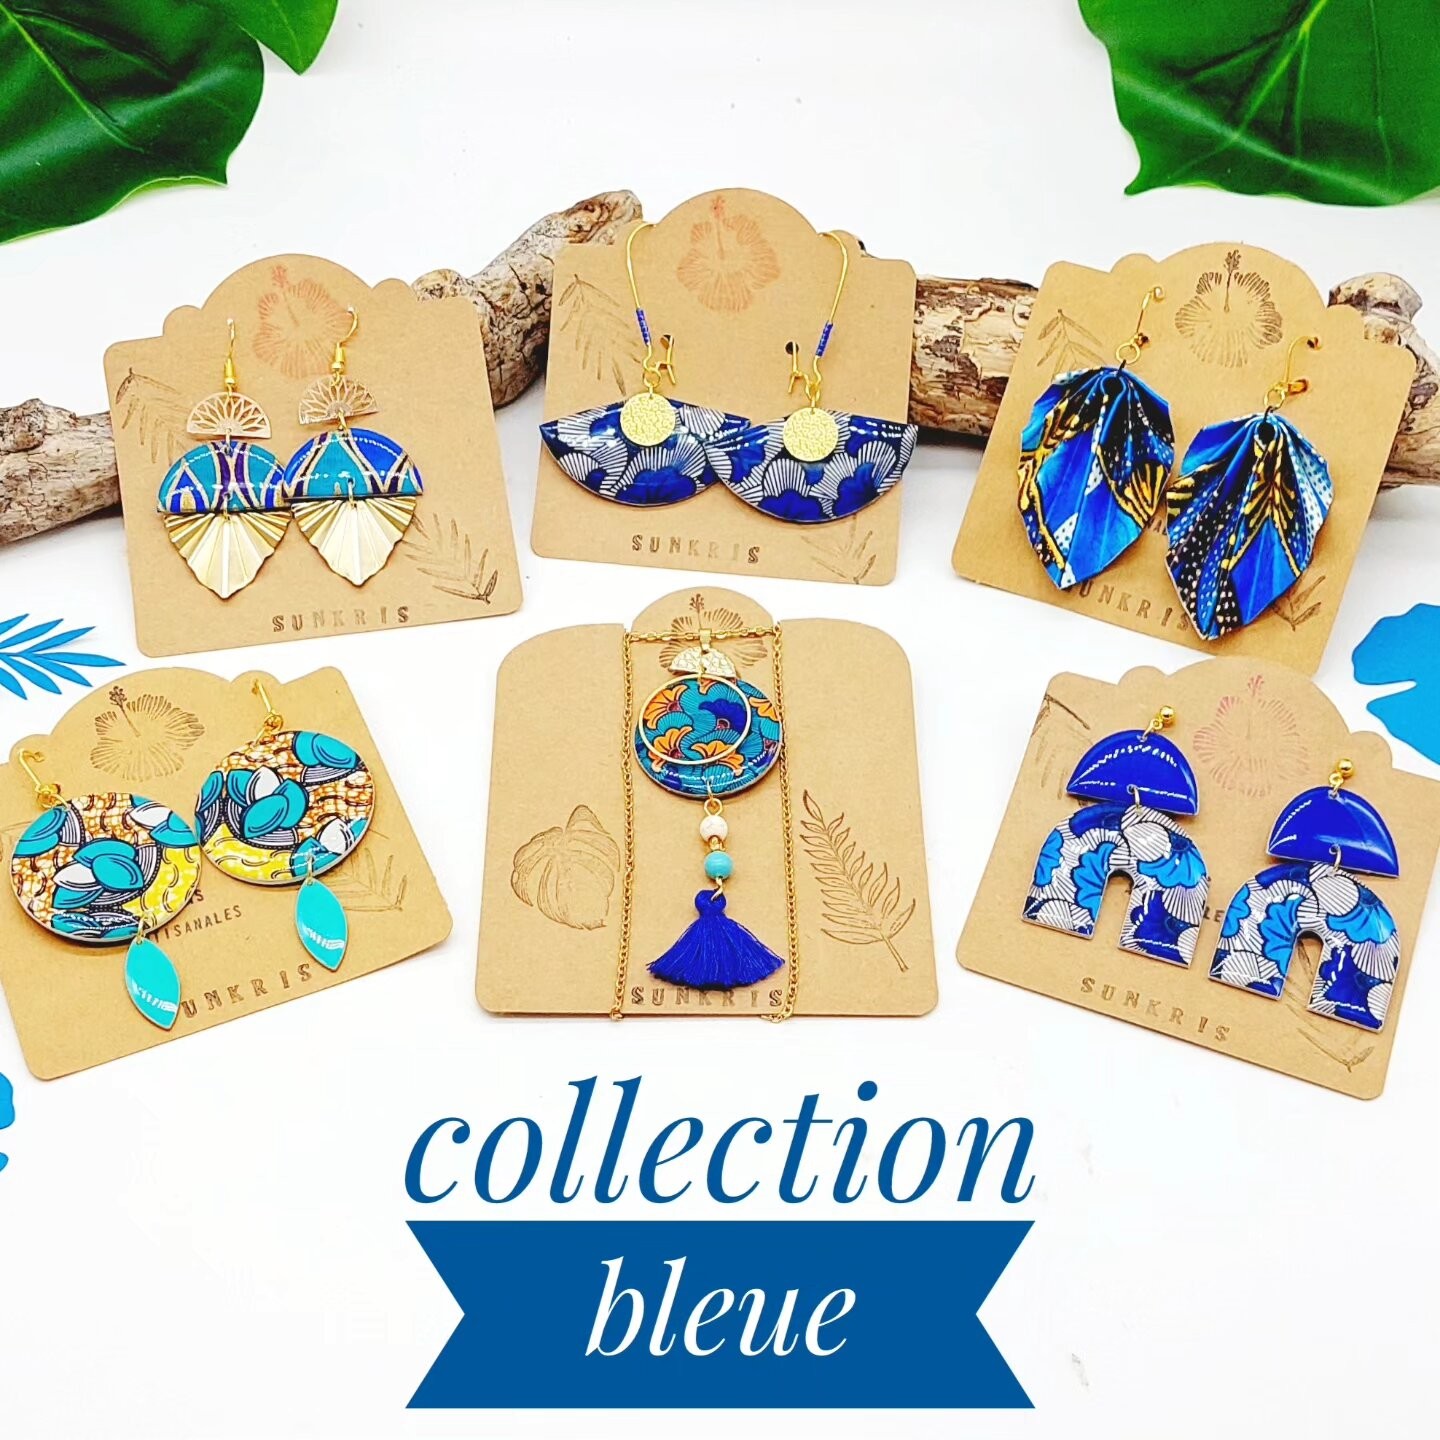 Collection bleue